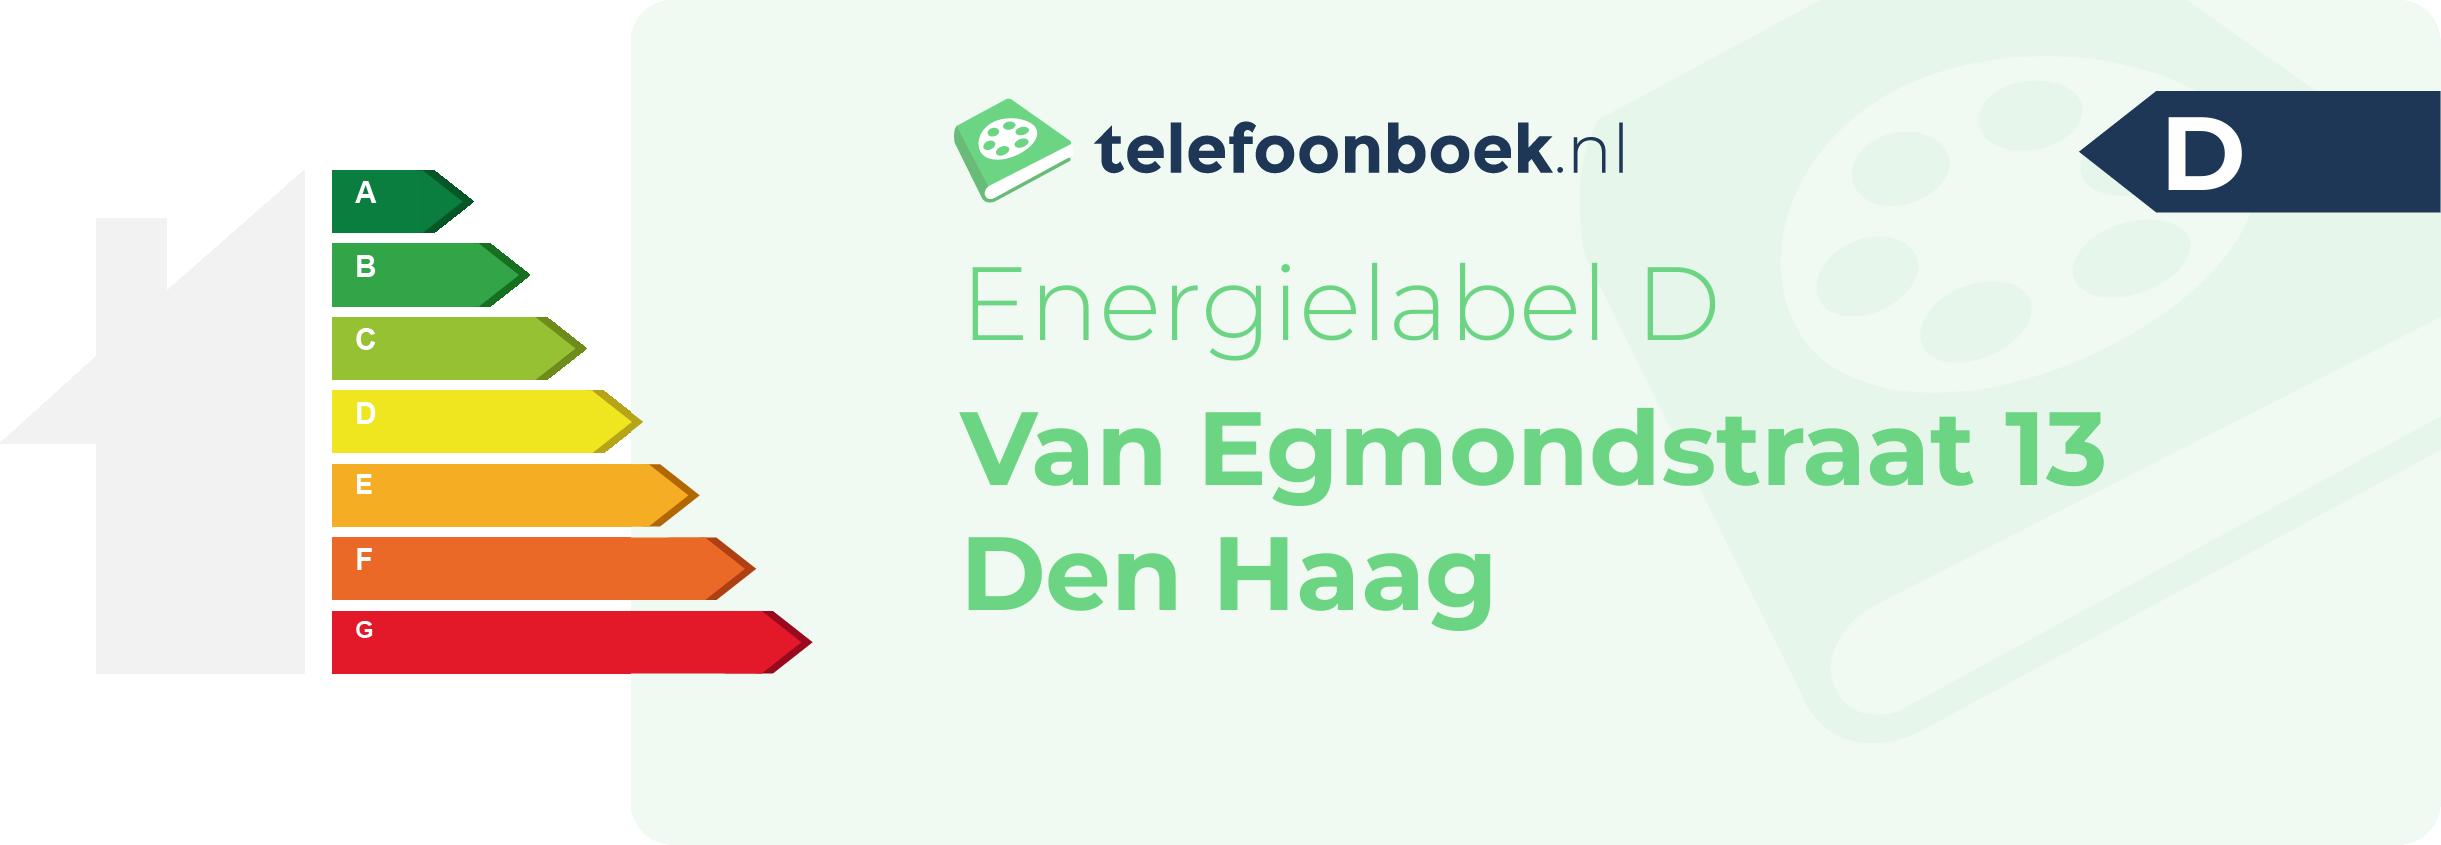 Energielabel Van Egmondstraat 13 Den Haag